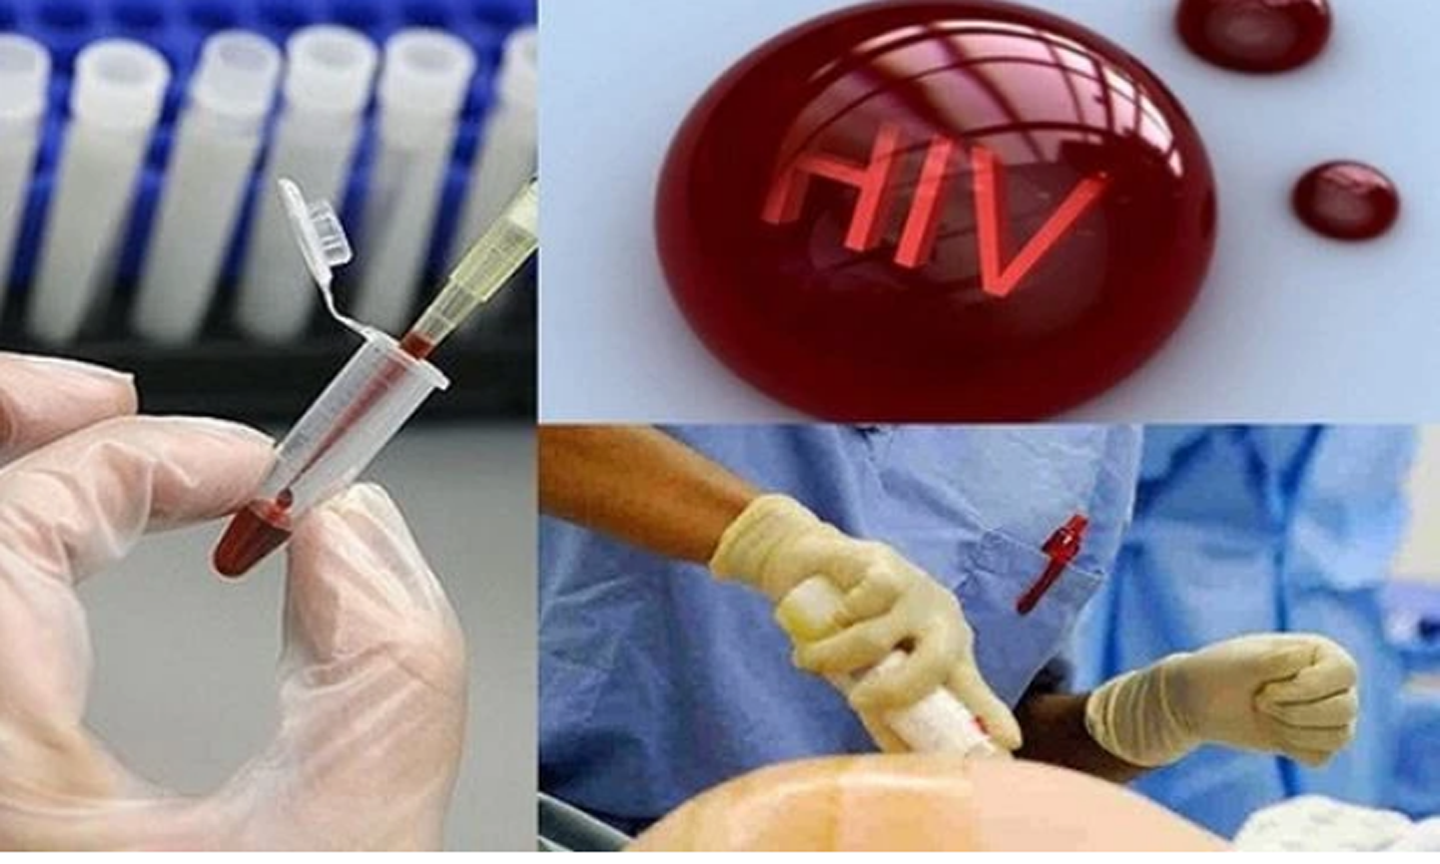 Điều kiện xác định người bị phơi nhiễm HIV, người bị nhiễm HIV do tai nạn rủi ro nghề nghiệp. (Ảnh: chinhphu.vn)